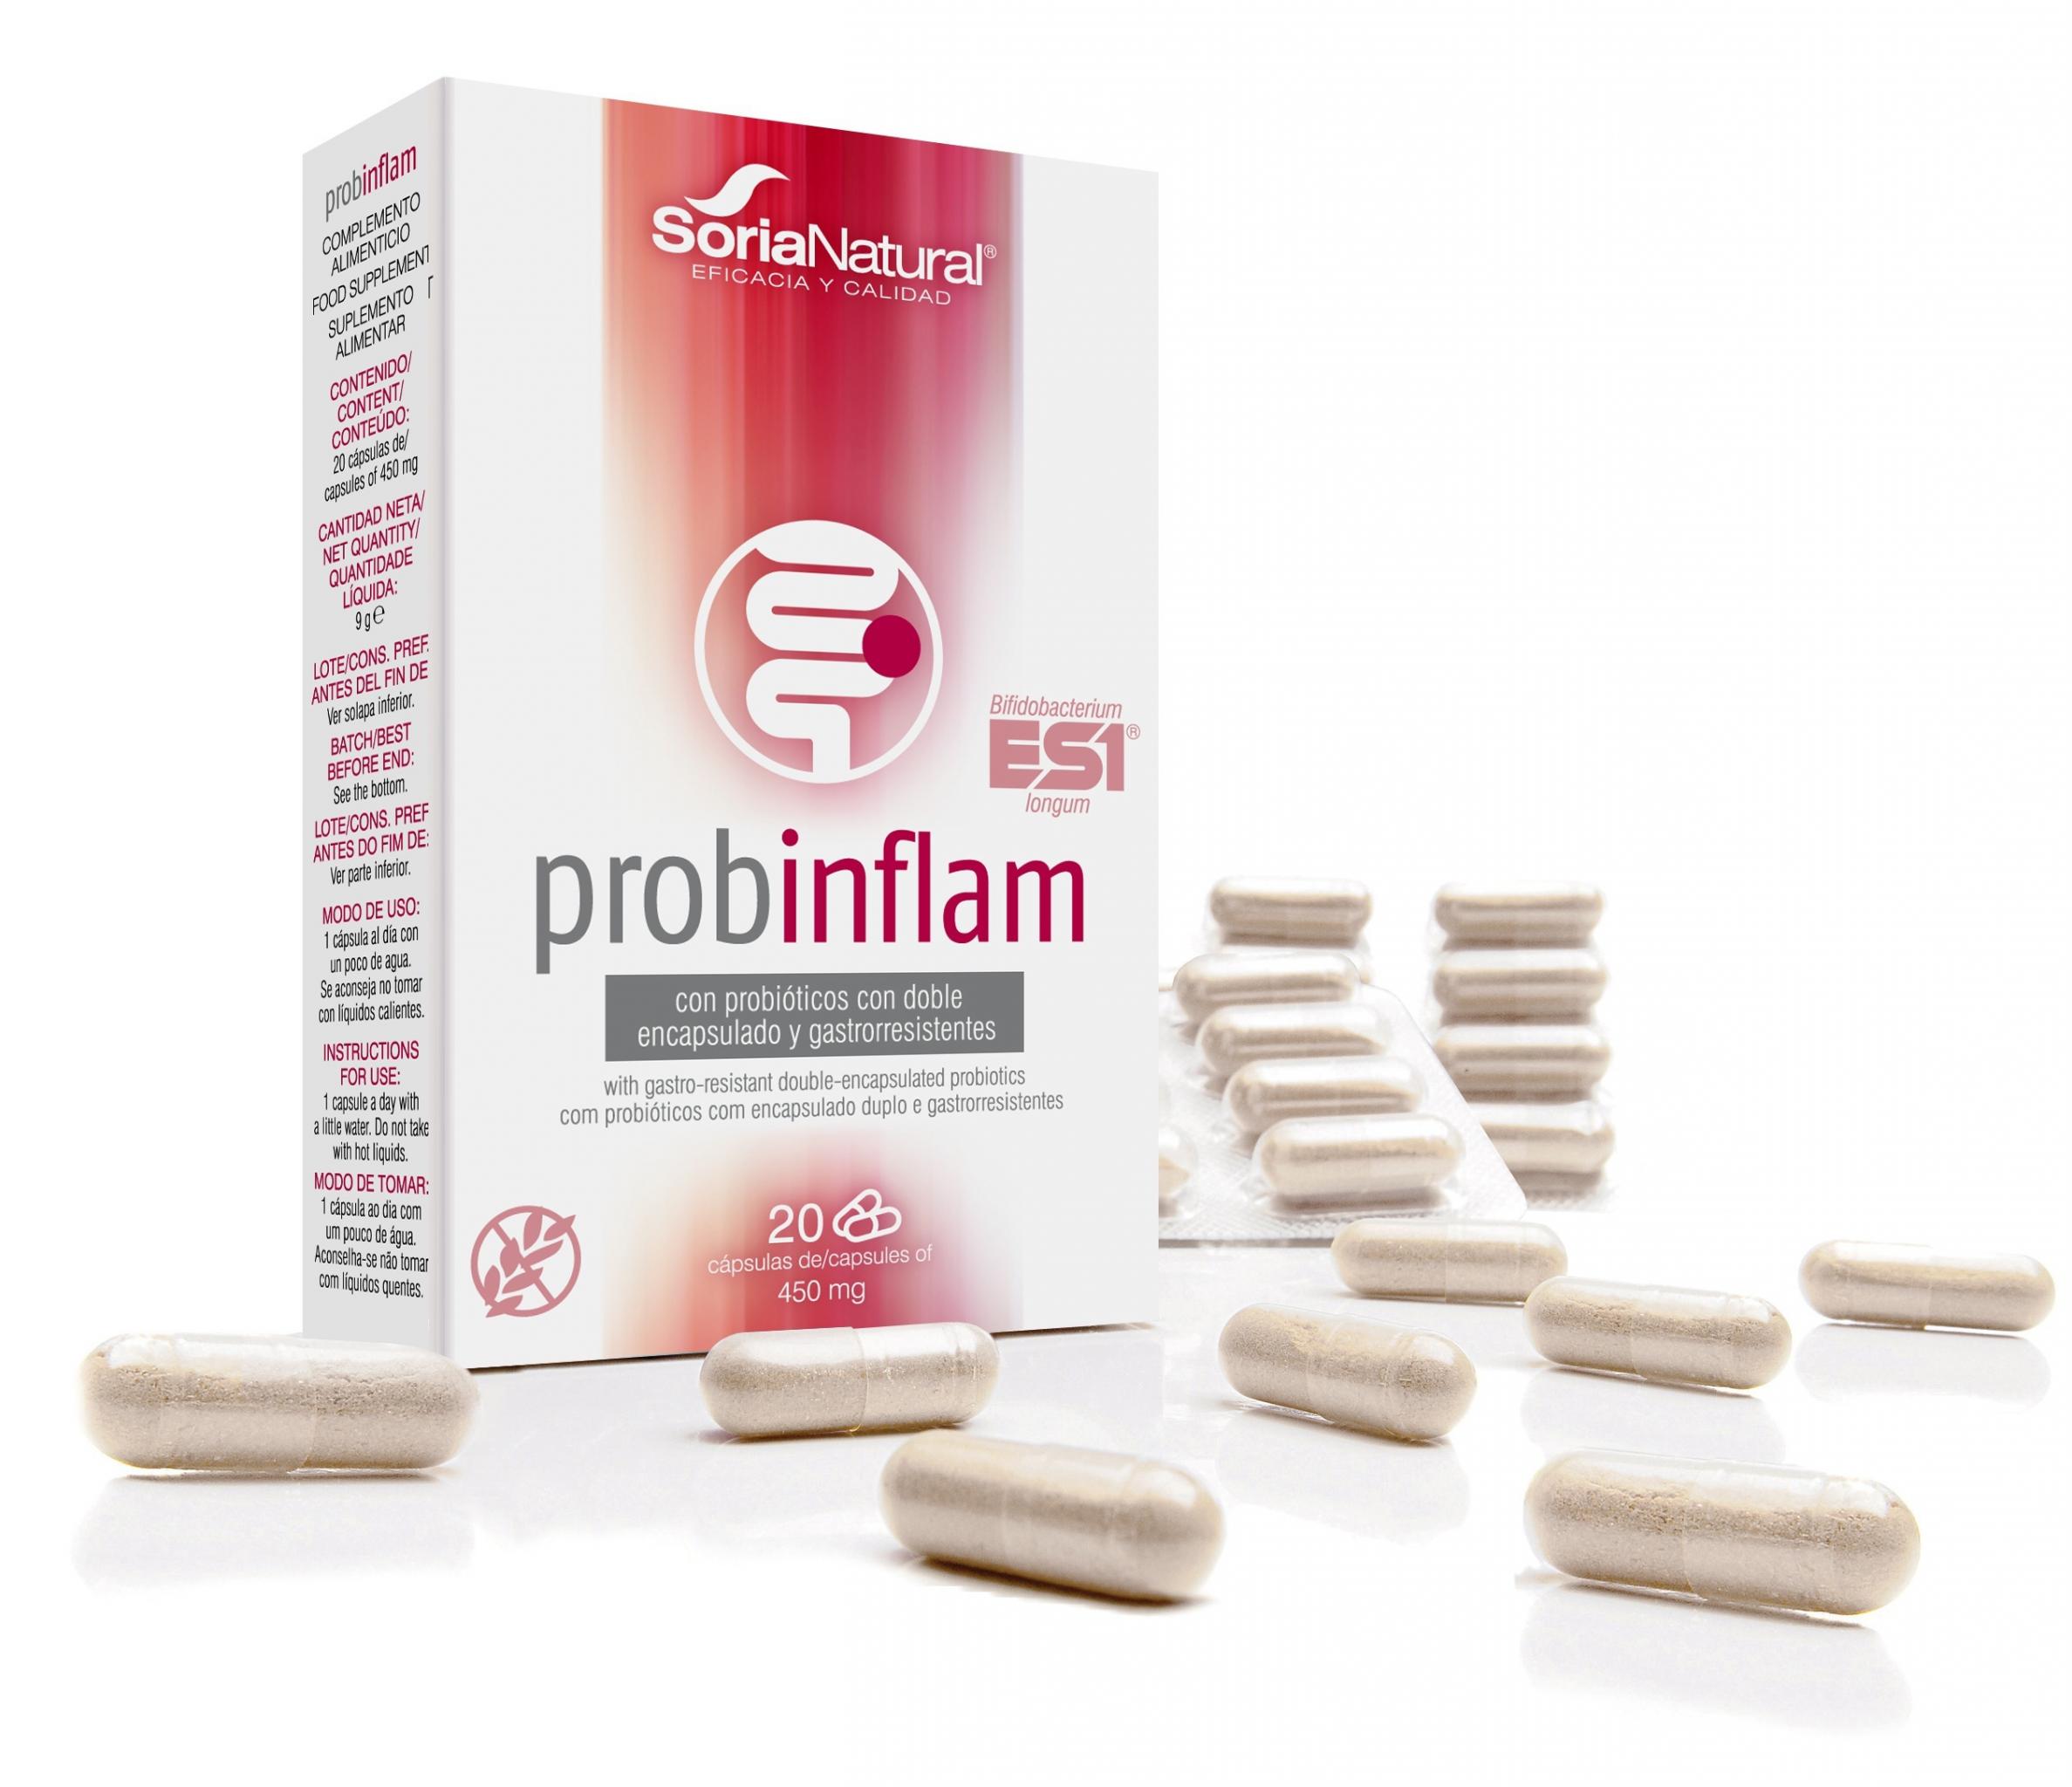 capsulas-probinflam-soria-natural-1.jpg